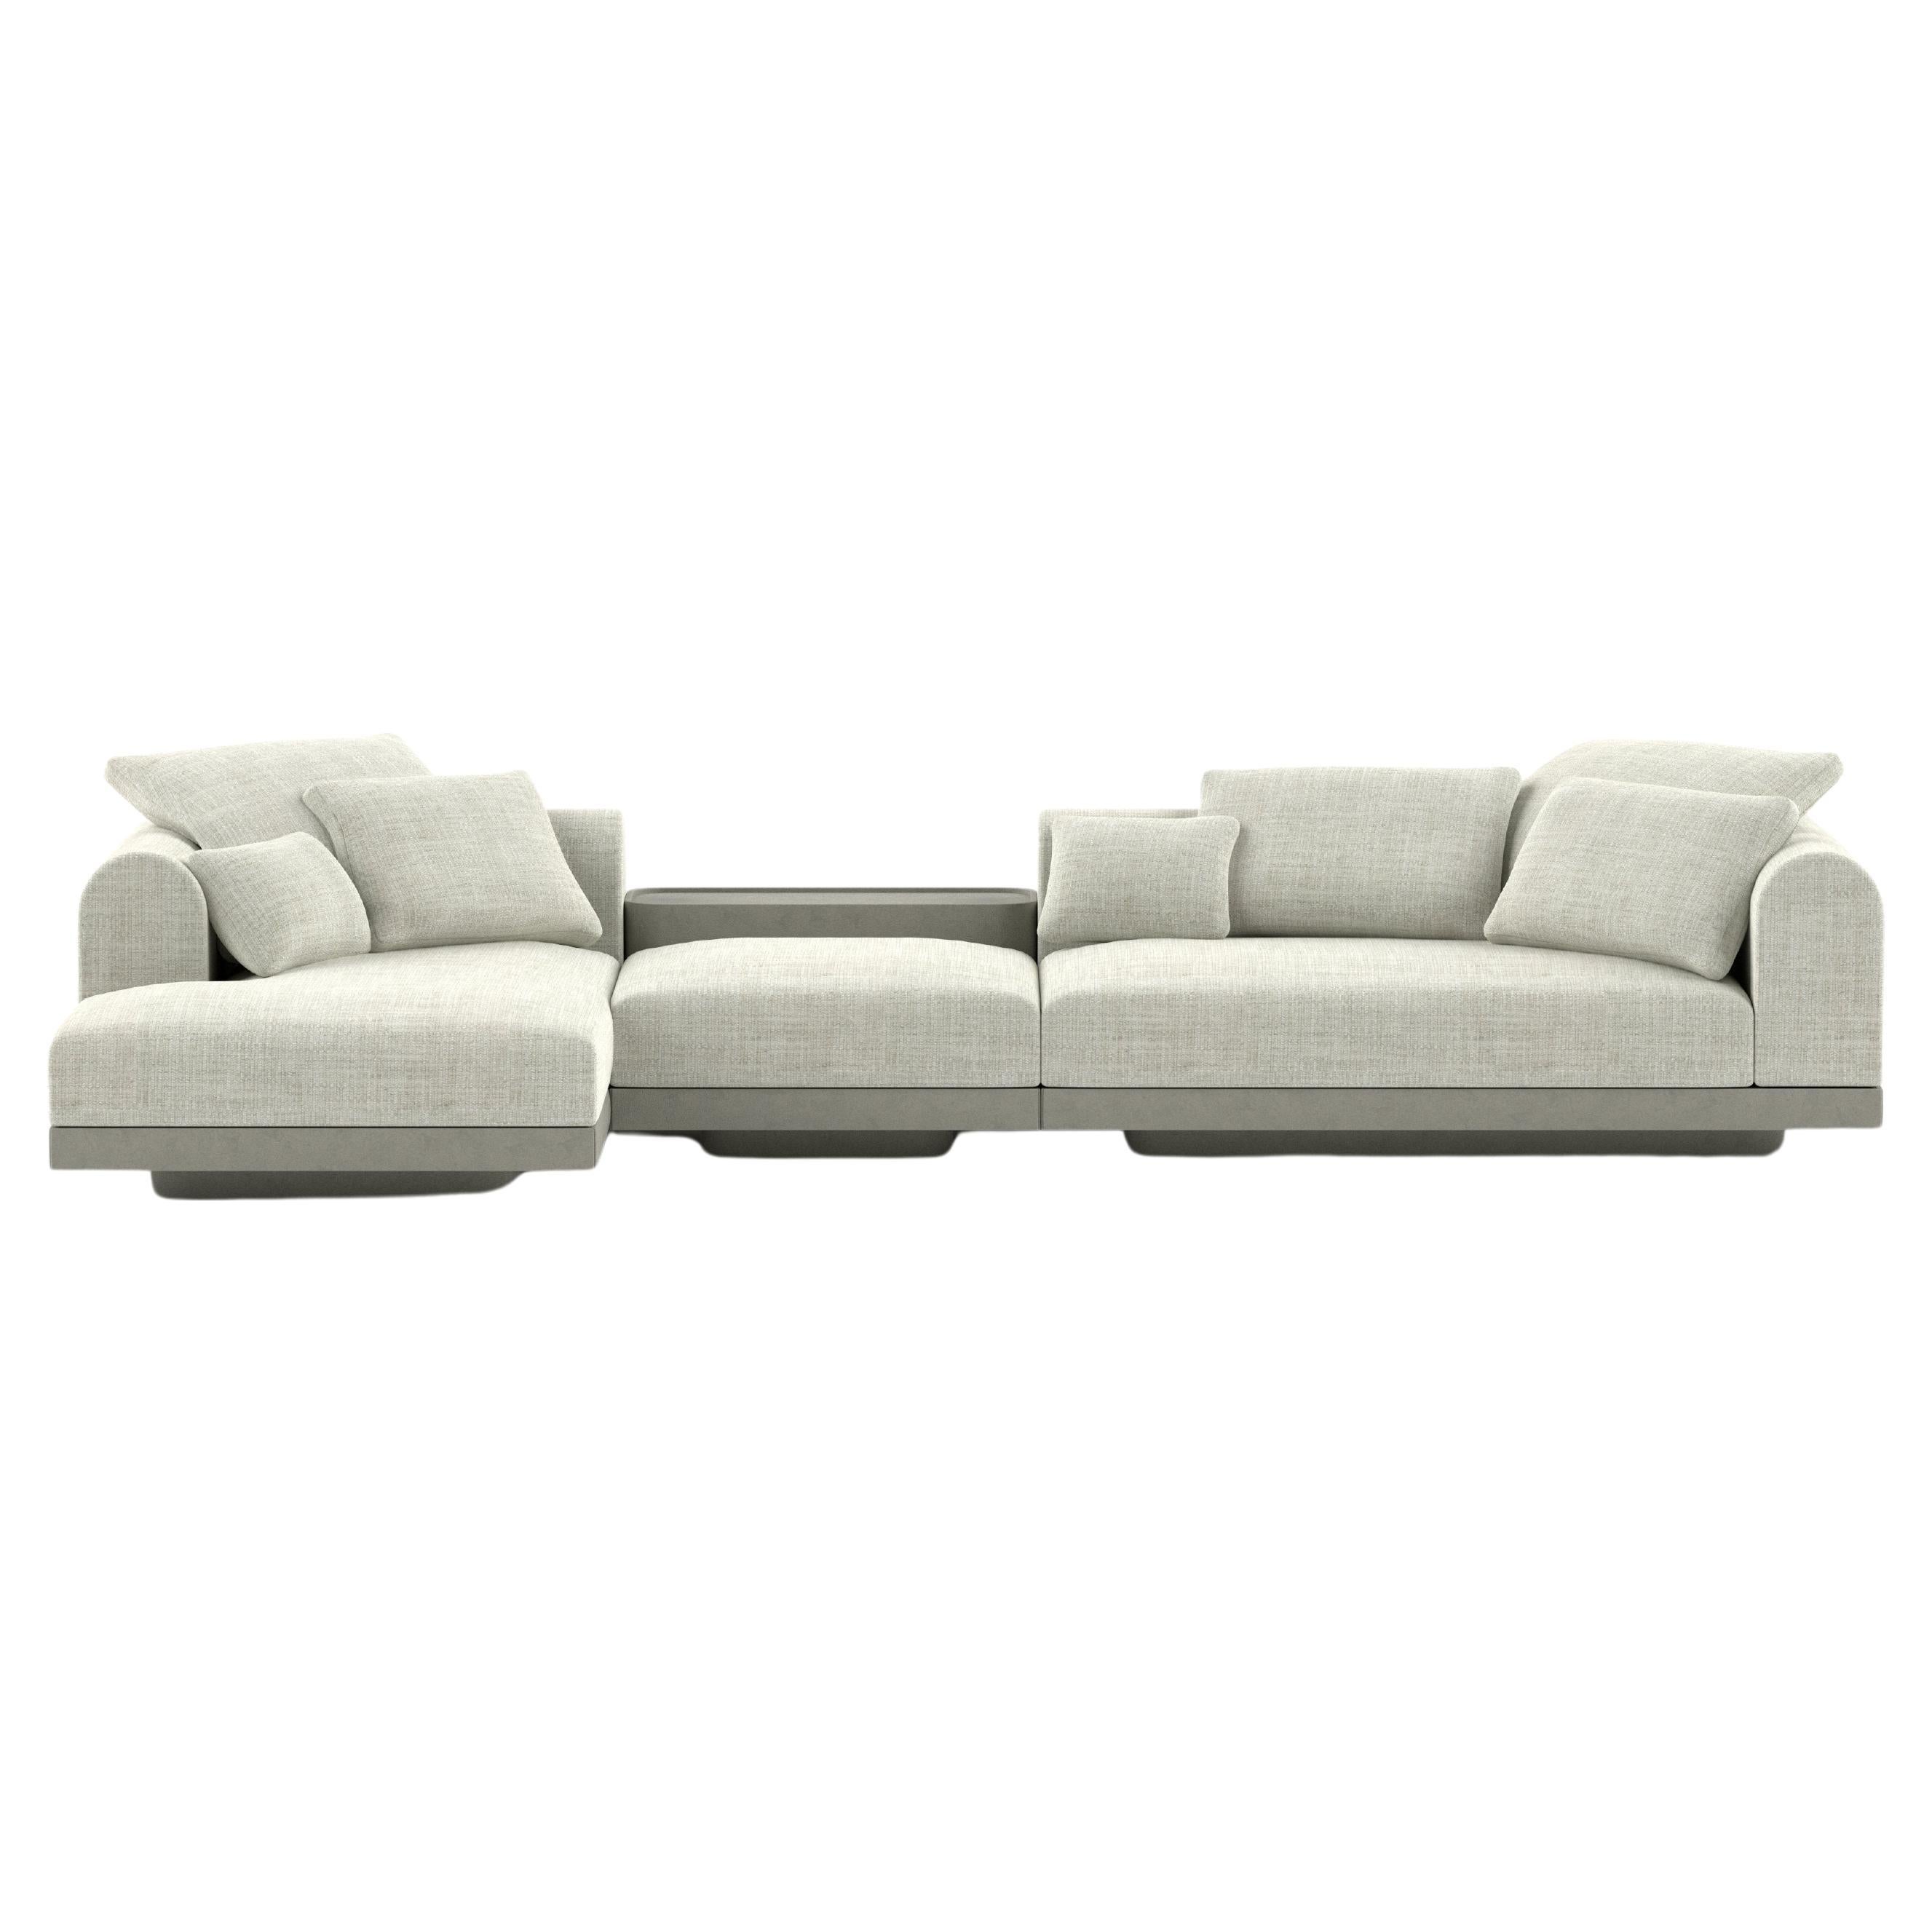 'Aqueduct' Contemporary Sofa by Poiat, Setup 3, Fox 02, High Plinth For Sale